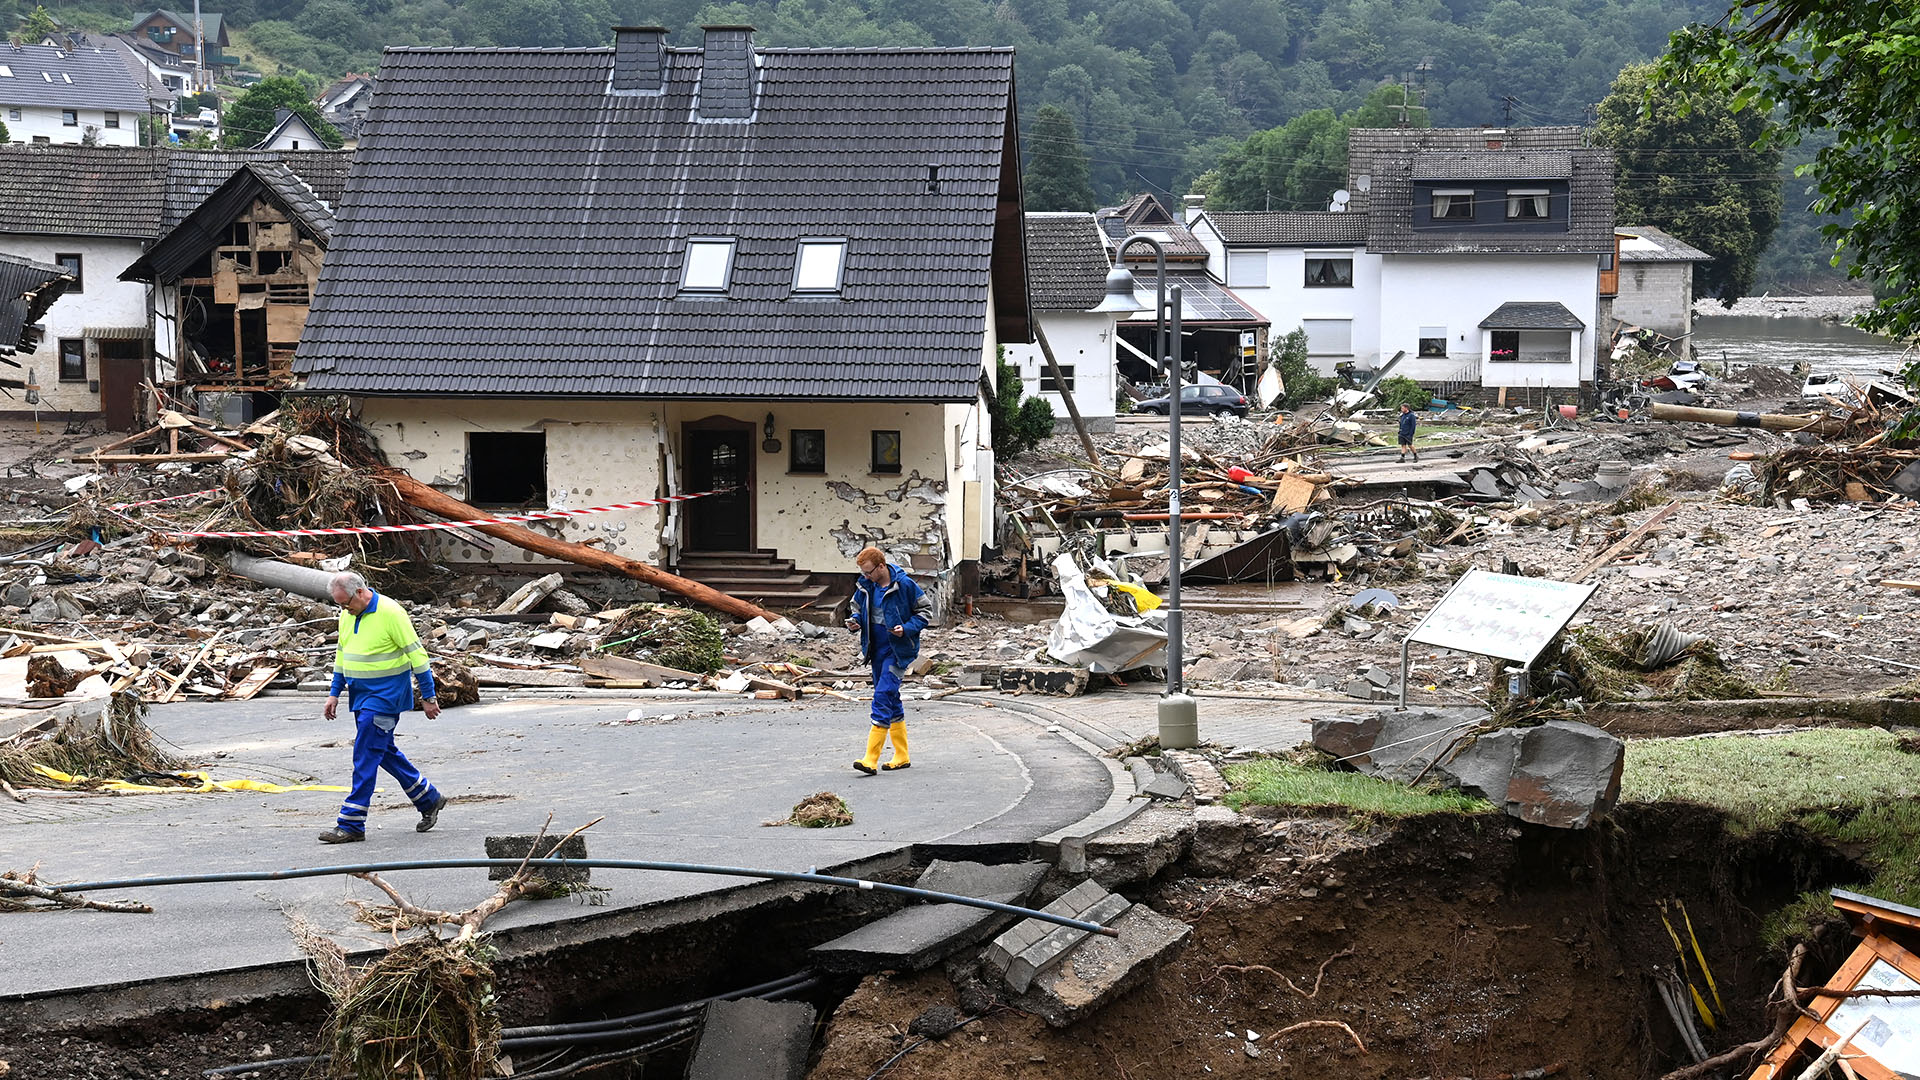 Dos hombres caminan por una carretera que se deslizó parcialmente después de que las inundaciones causaron daños importantes en Schuld, cerca de Bad Neuenahr-Ahrweiler, en el oeste de Alemania